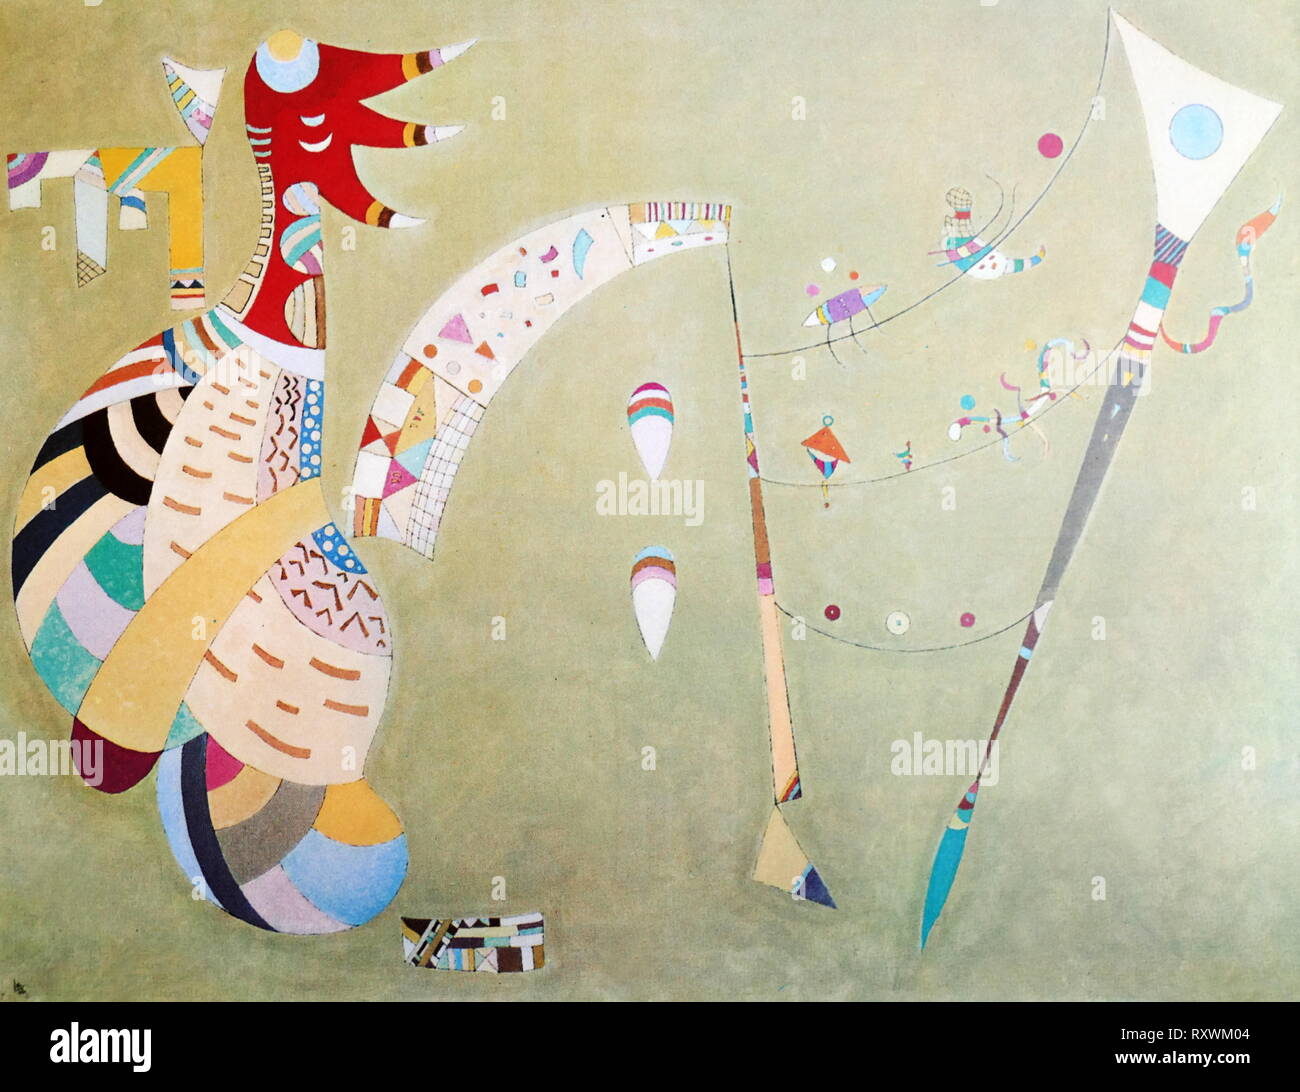 Swinging' et de l'huile sur toile, 1942 laque, par Vassily Kandinsky (1866 - 1944), peintre et théoricien de l'art russe. Kandinsky est généralement reconnu comme le pionnier de l'art abstrait Banque D'Images